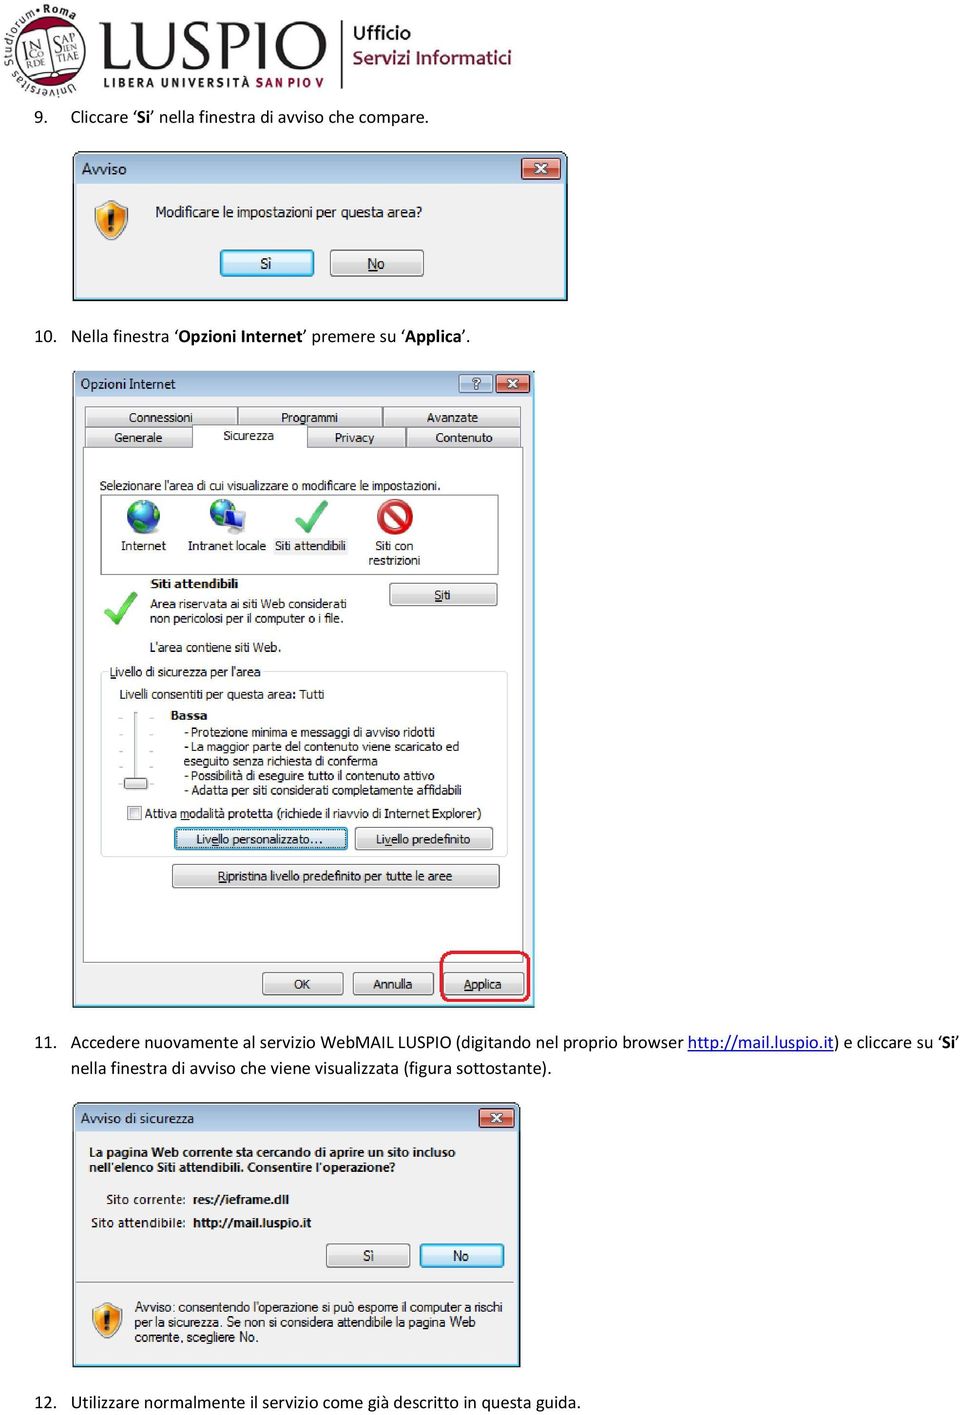 Accedere nuovamente al servizio WebMAIL LUSPIO (digitando nel proprio browser http://mail.